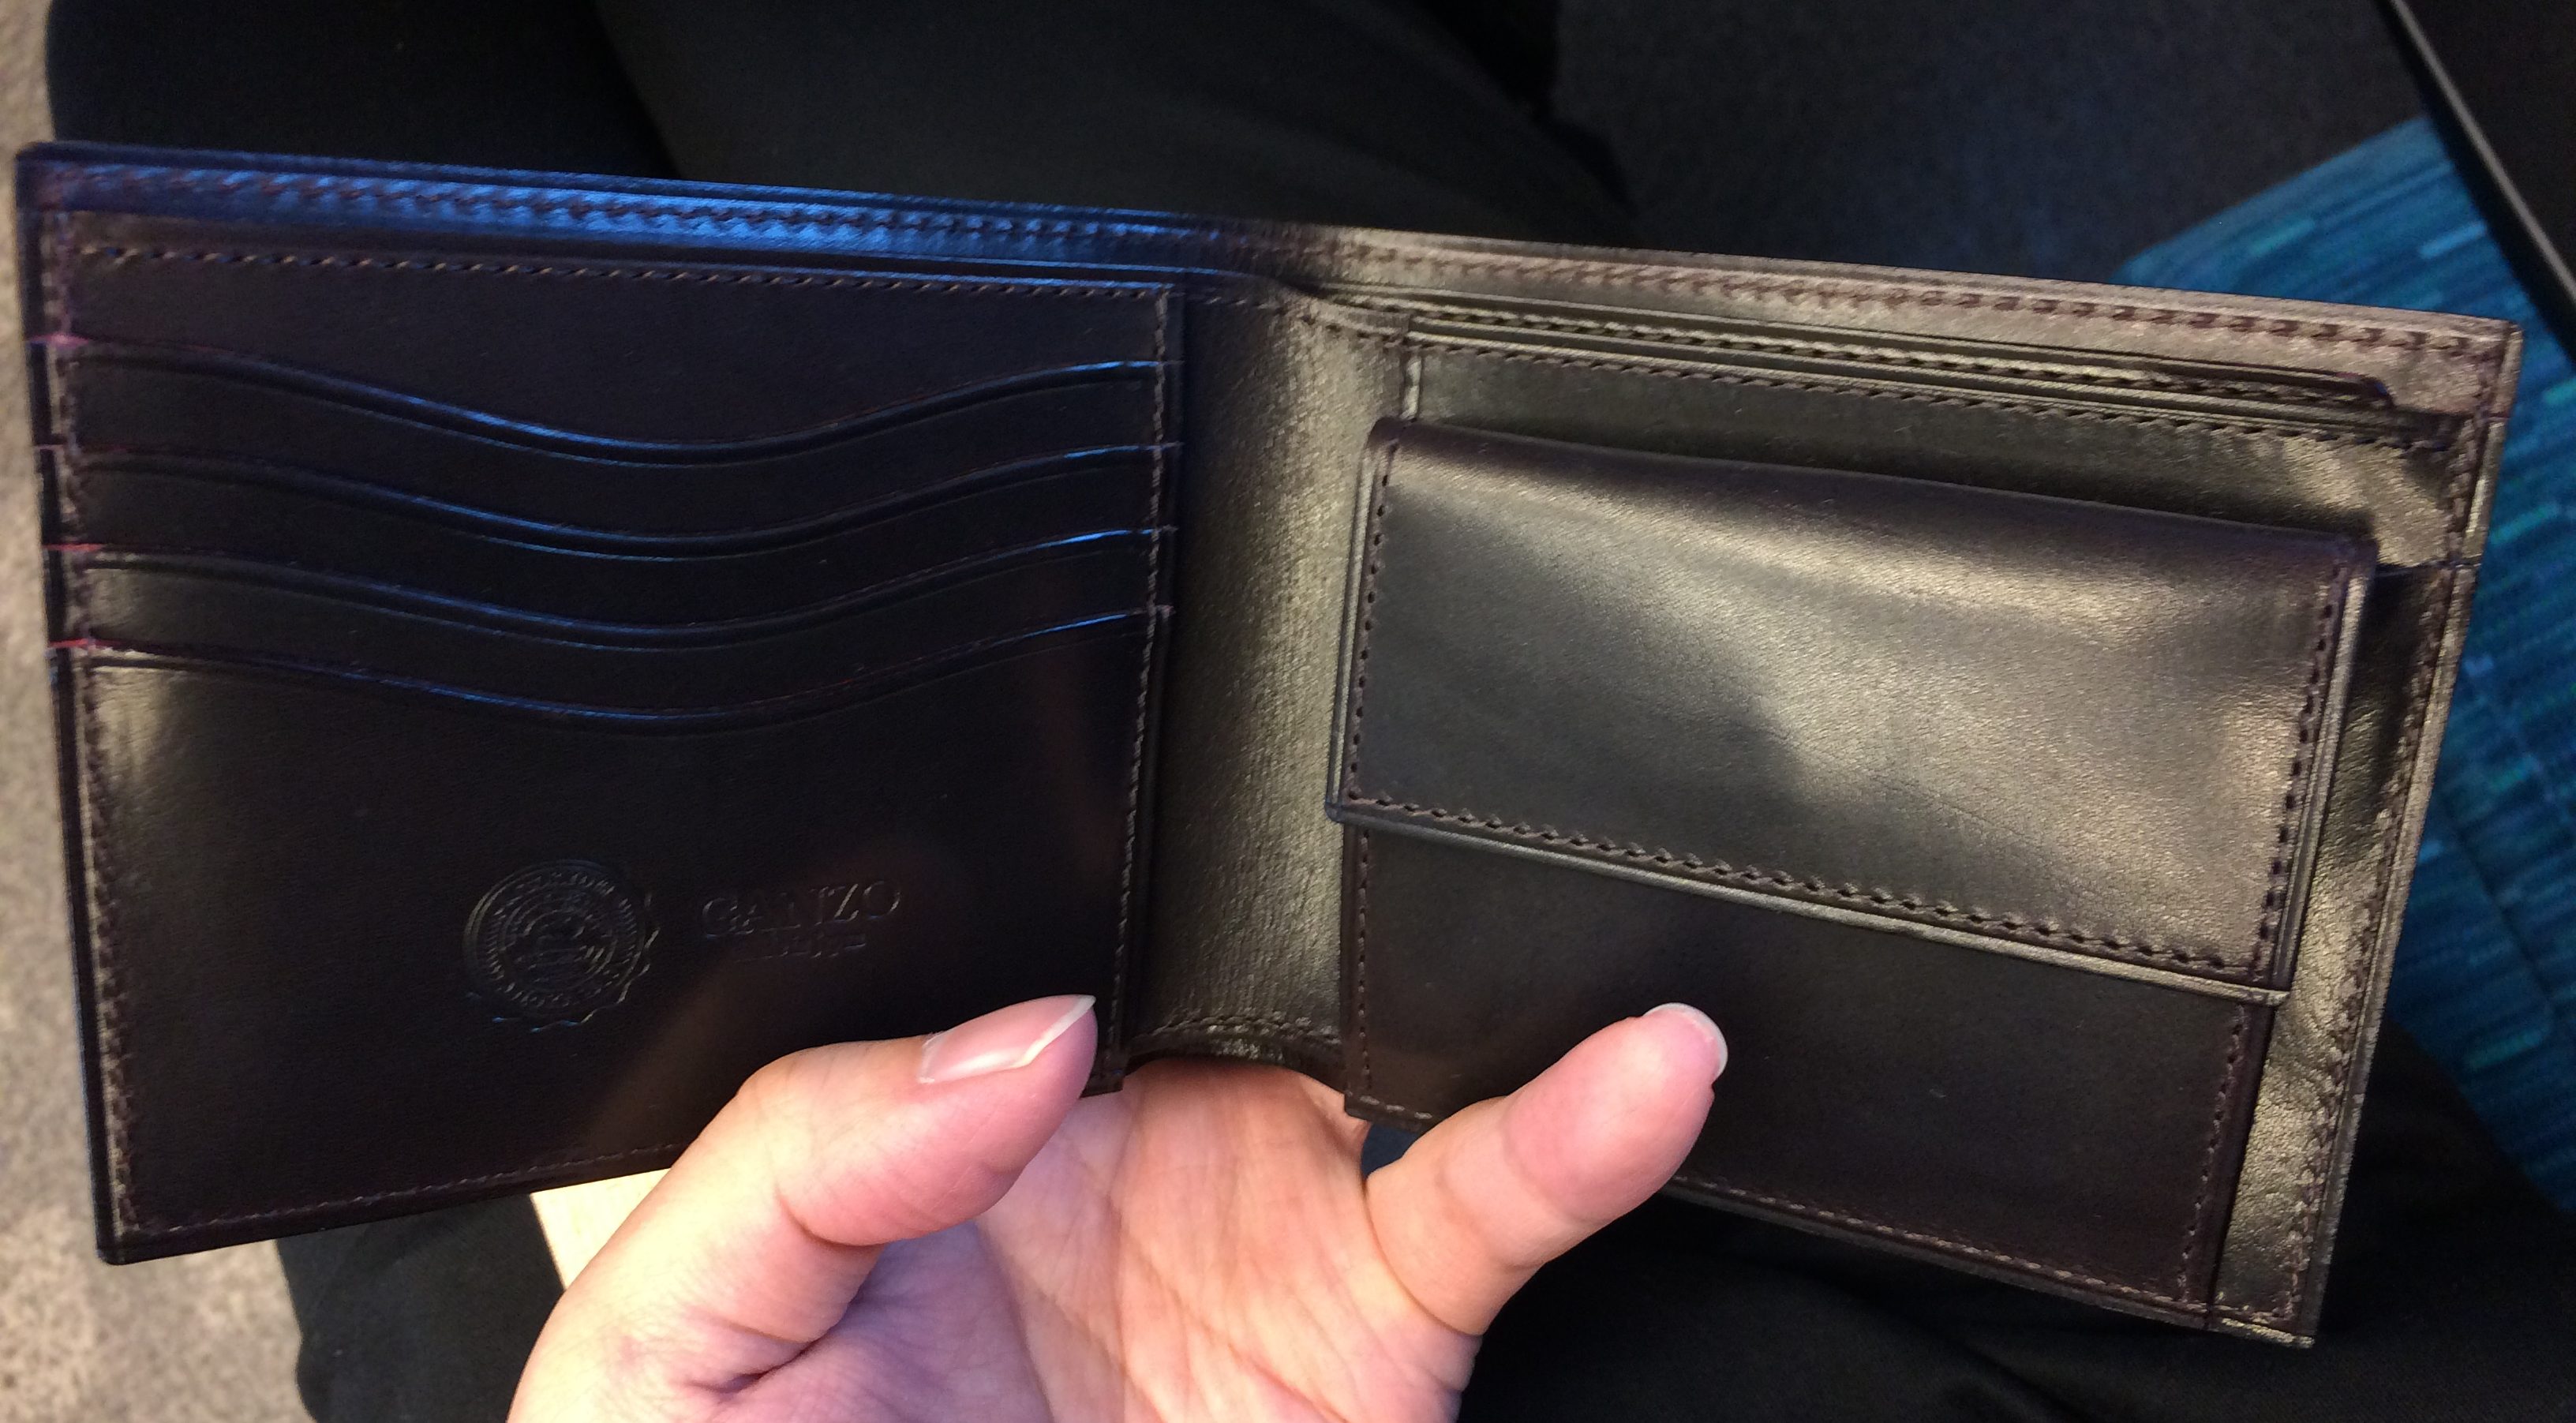 GUD2 (ジーユーディー2)小銭入れ付き二つ折り財布